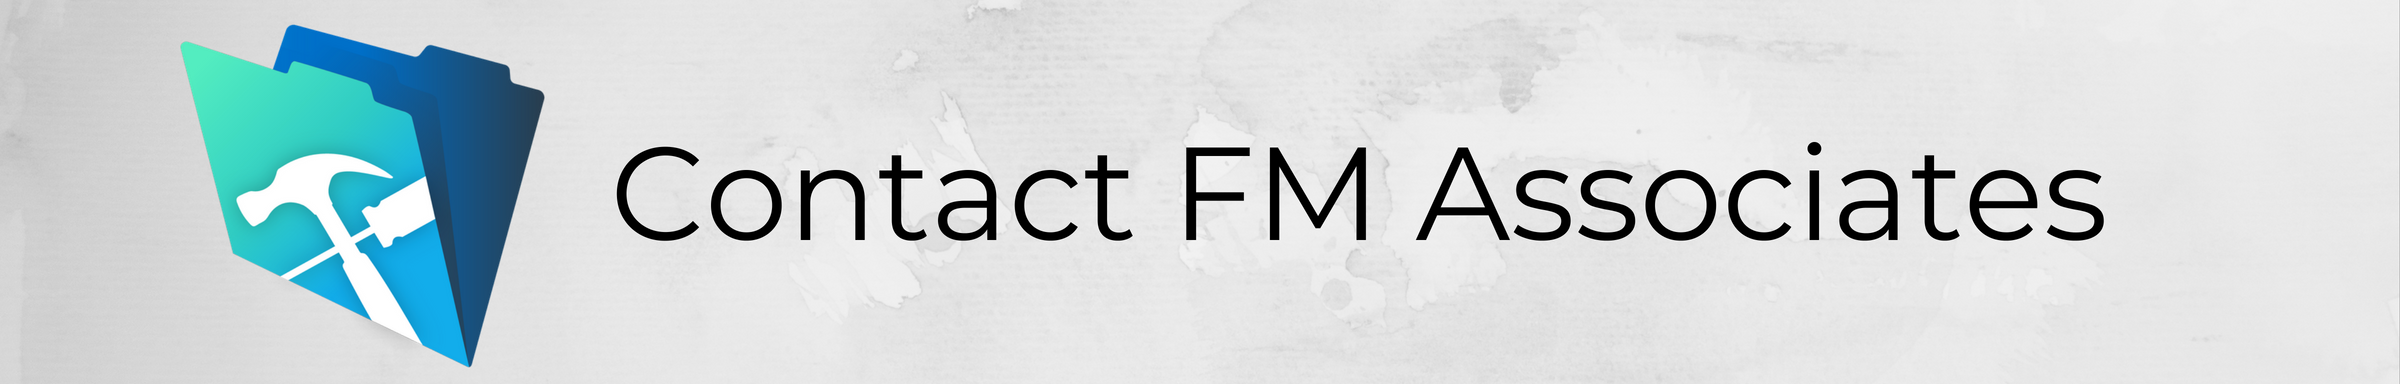 Contact FM Associates